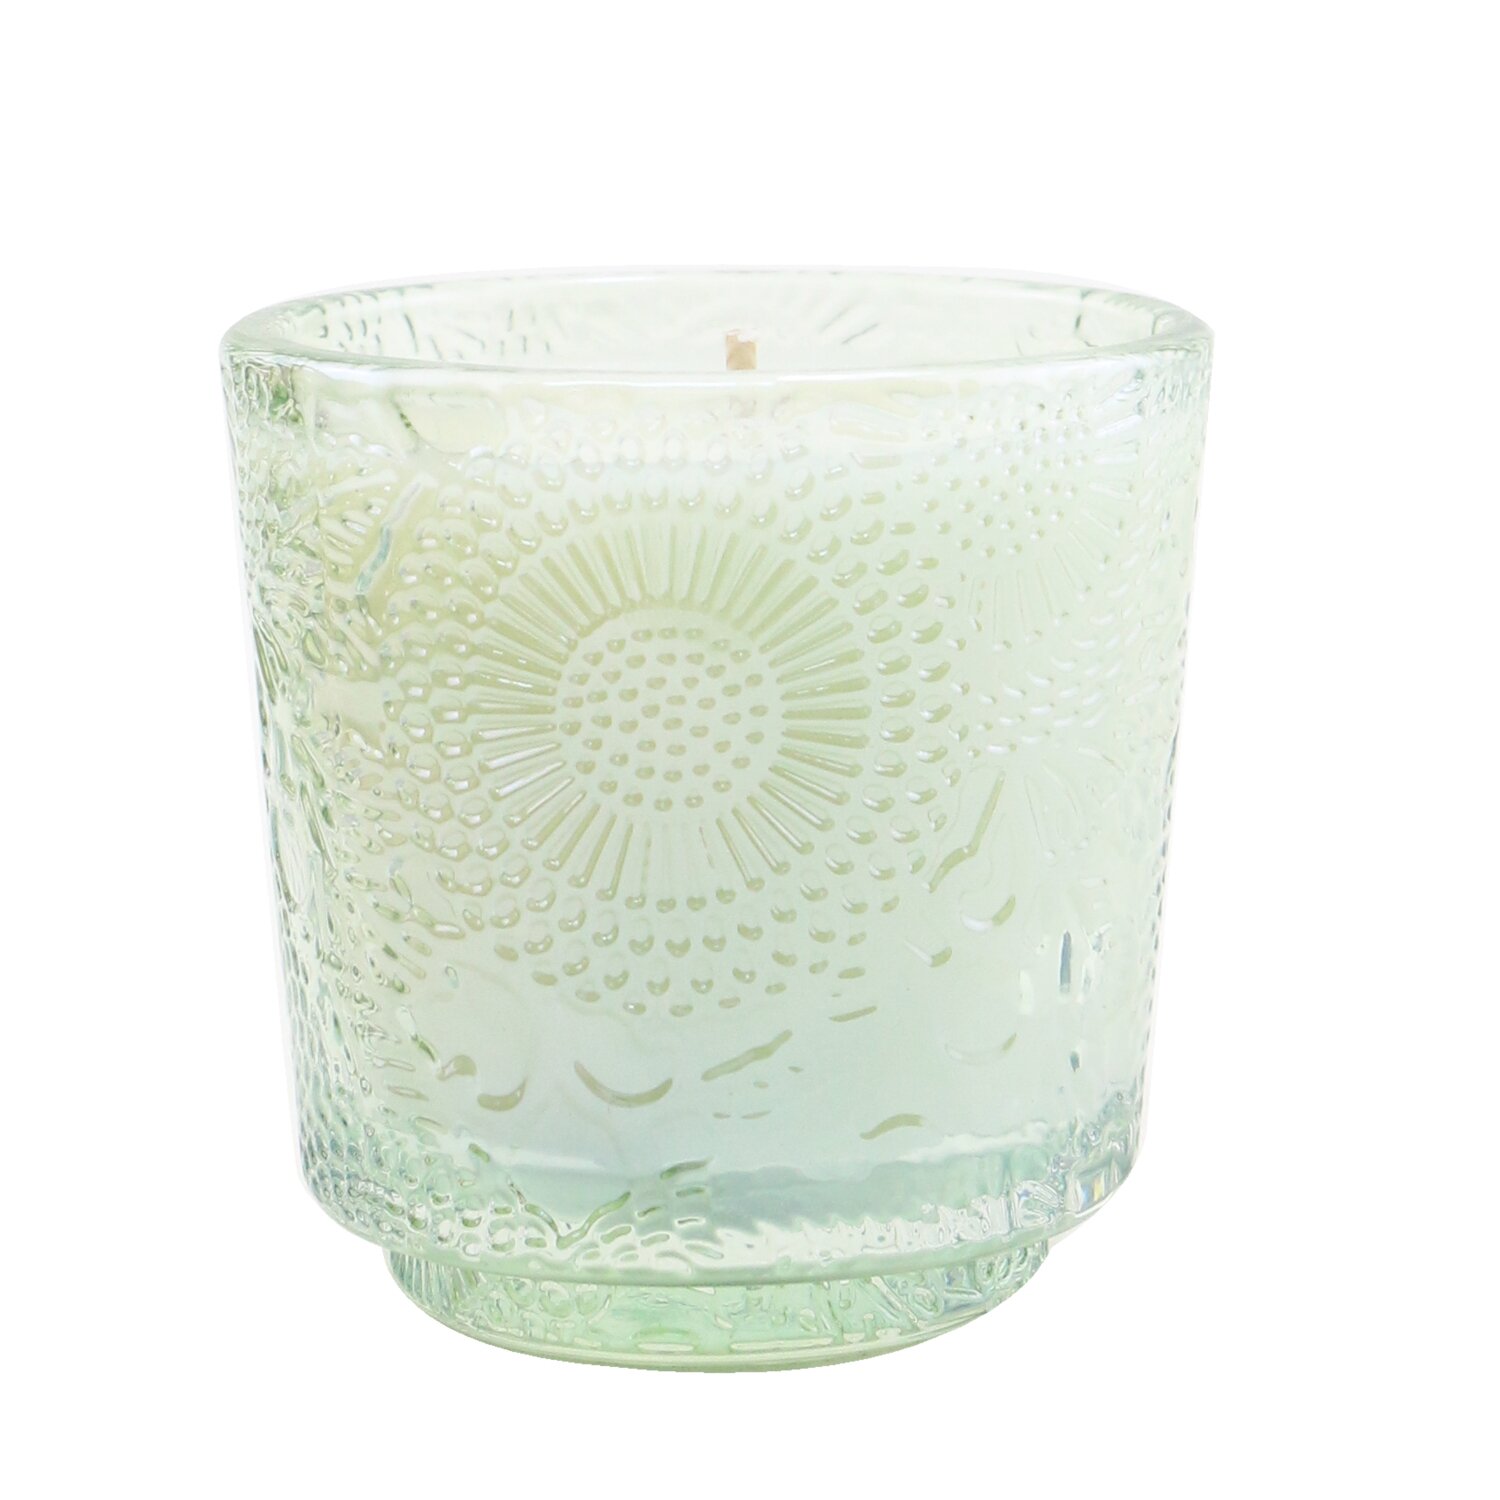 Voluspa Petite Pedestal Candle - White Cypress 72g/2.5oz